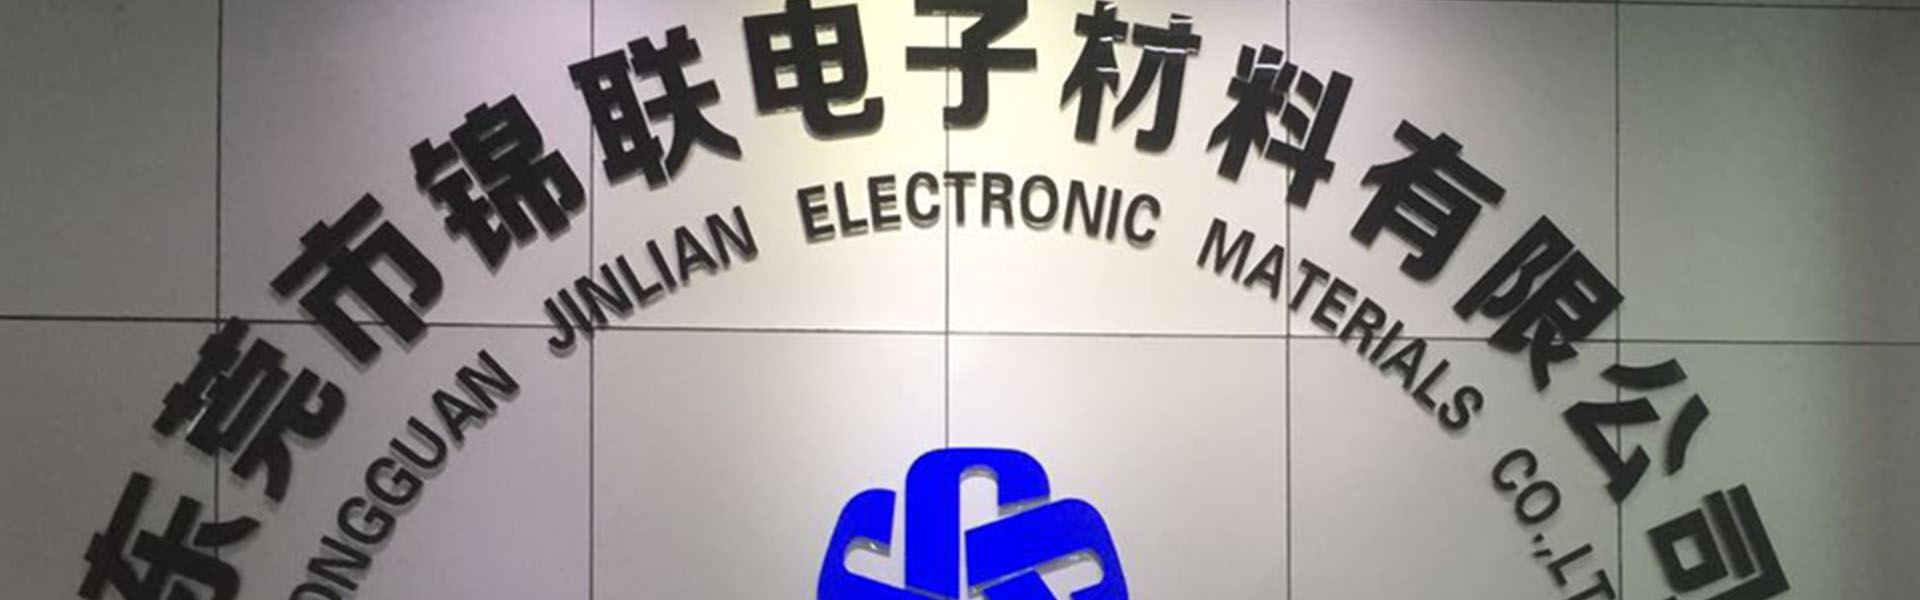 물집 상자, 트레이, 캐리어 테이프,Dongguan Jinlian Electronic Materials Co., Ltd